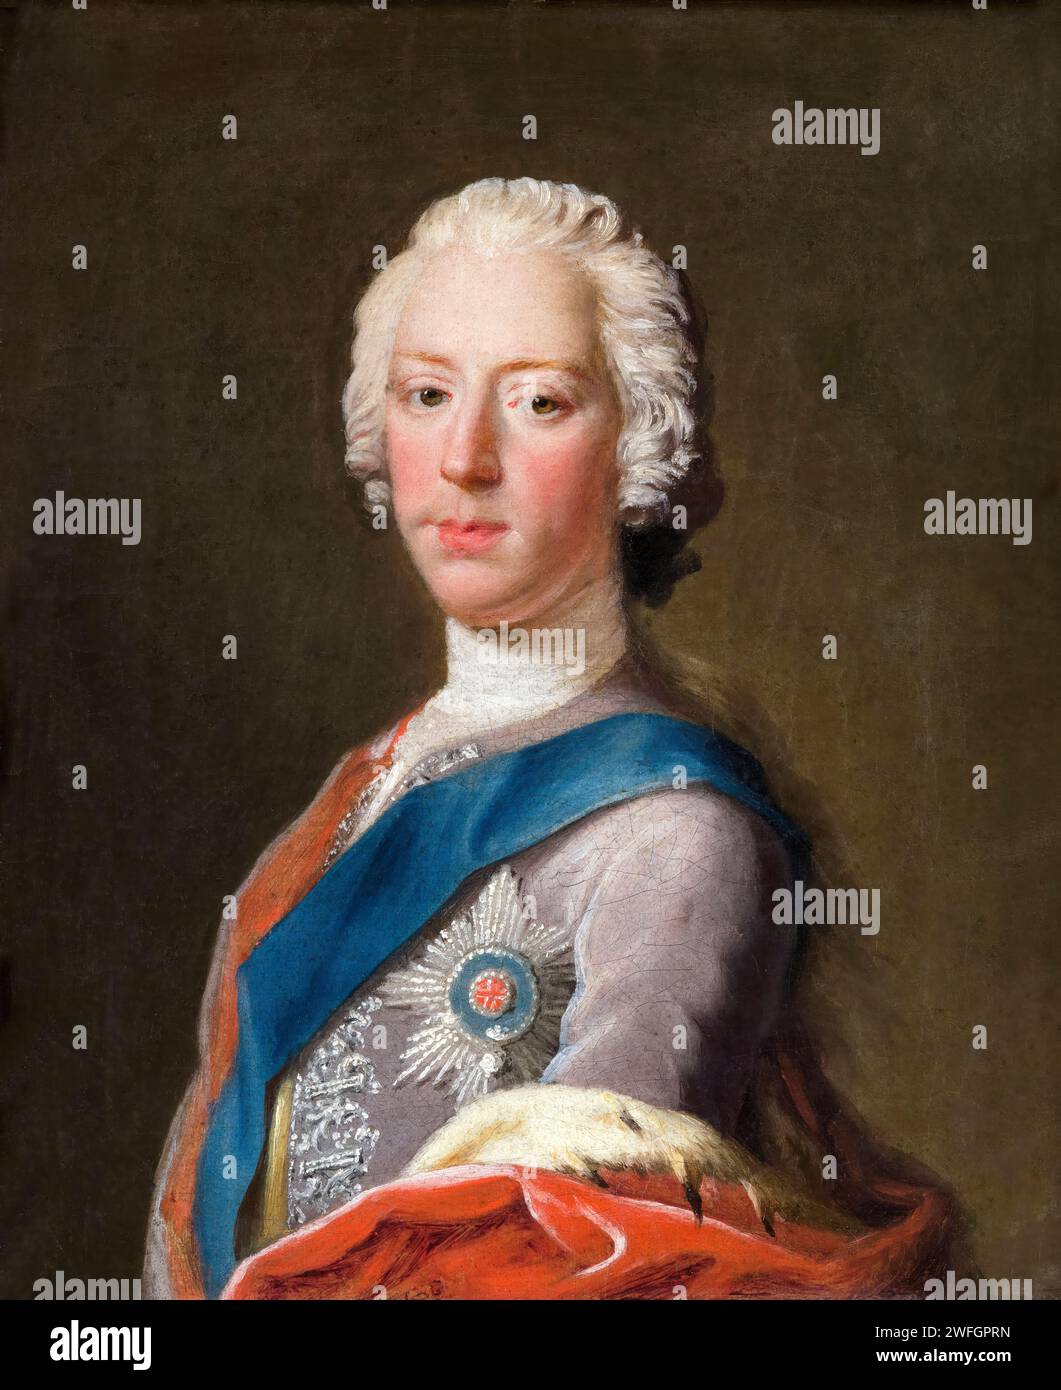 Prince Charles Edward Stuart (1720-1788), surnommé « Bonnie Prince Charlie », portrait à l'huile sur toile par Allan Ramsay, vers 1745 Banque D'Images